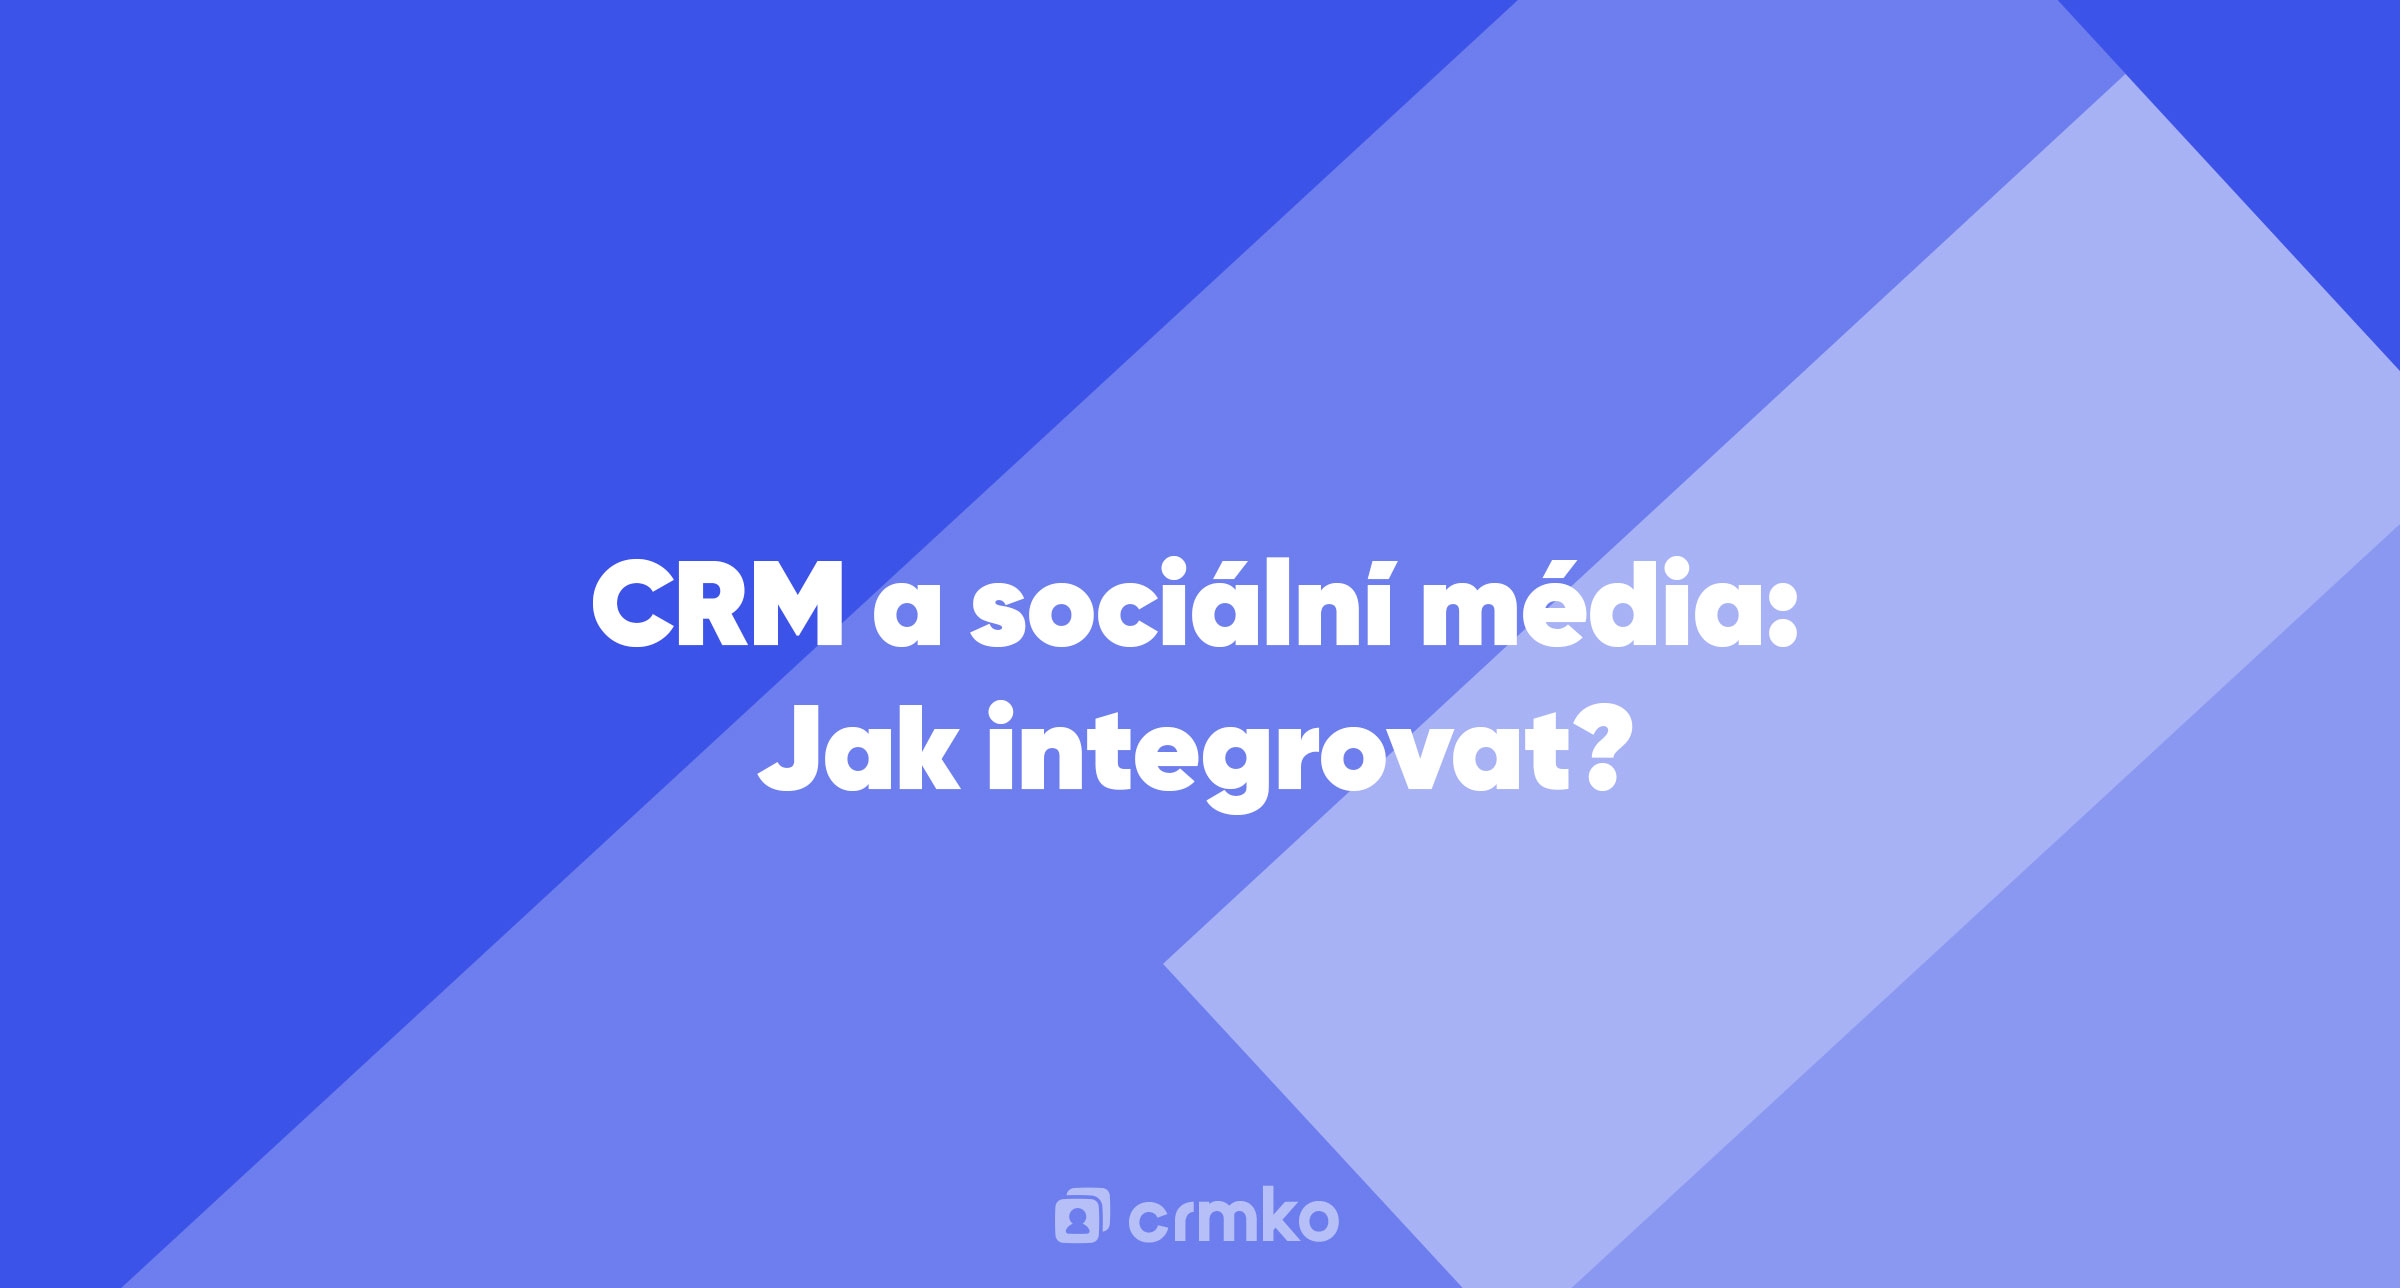 Článek | CRM a sociální média: Jak integrovat?